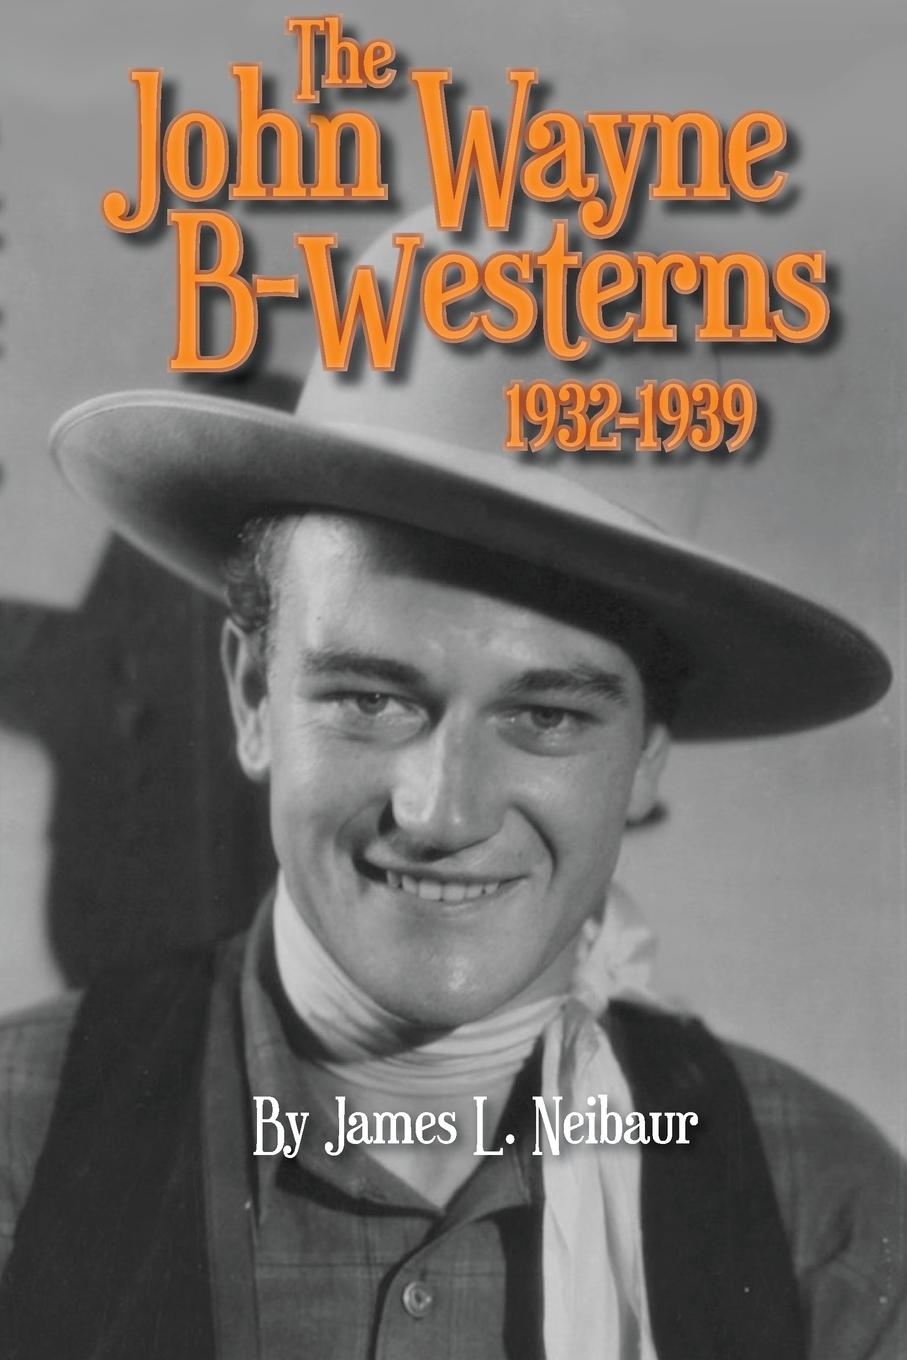 Carte John Wayne B-Westerns 1932-1939 